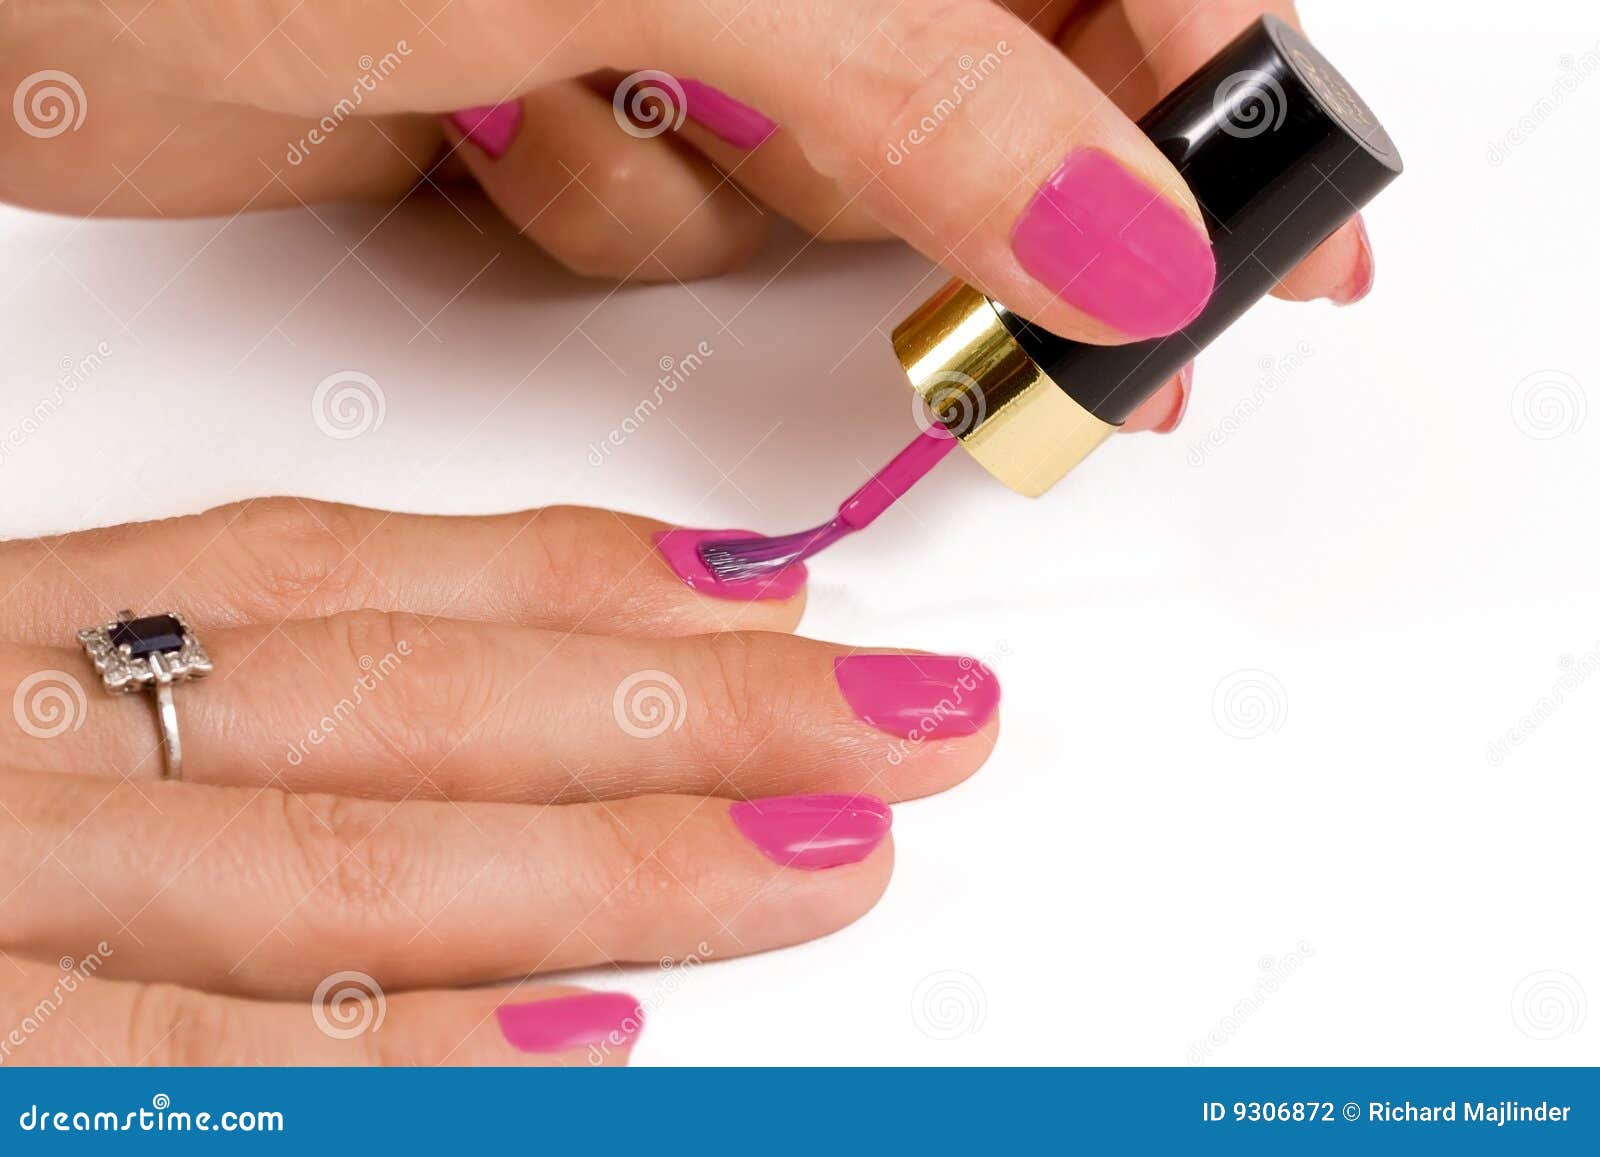 applying nail varnish